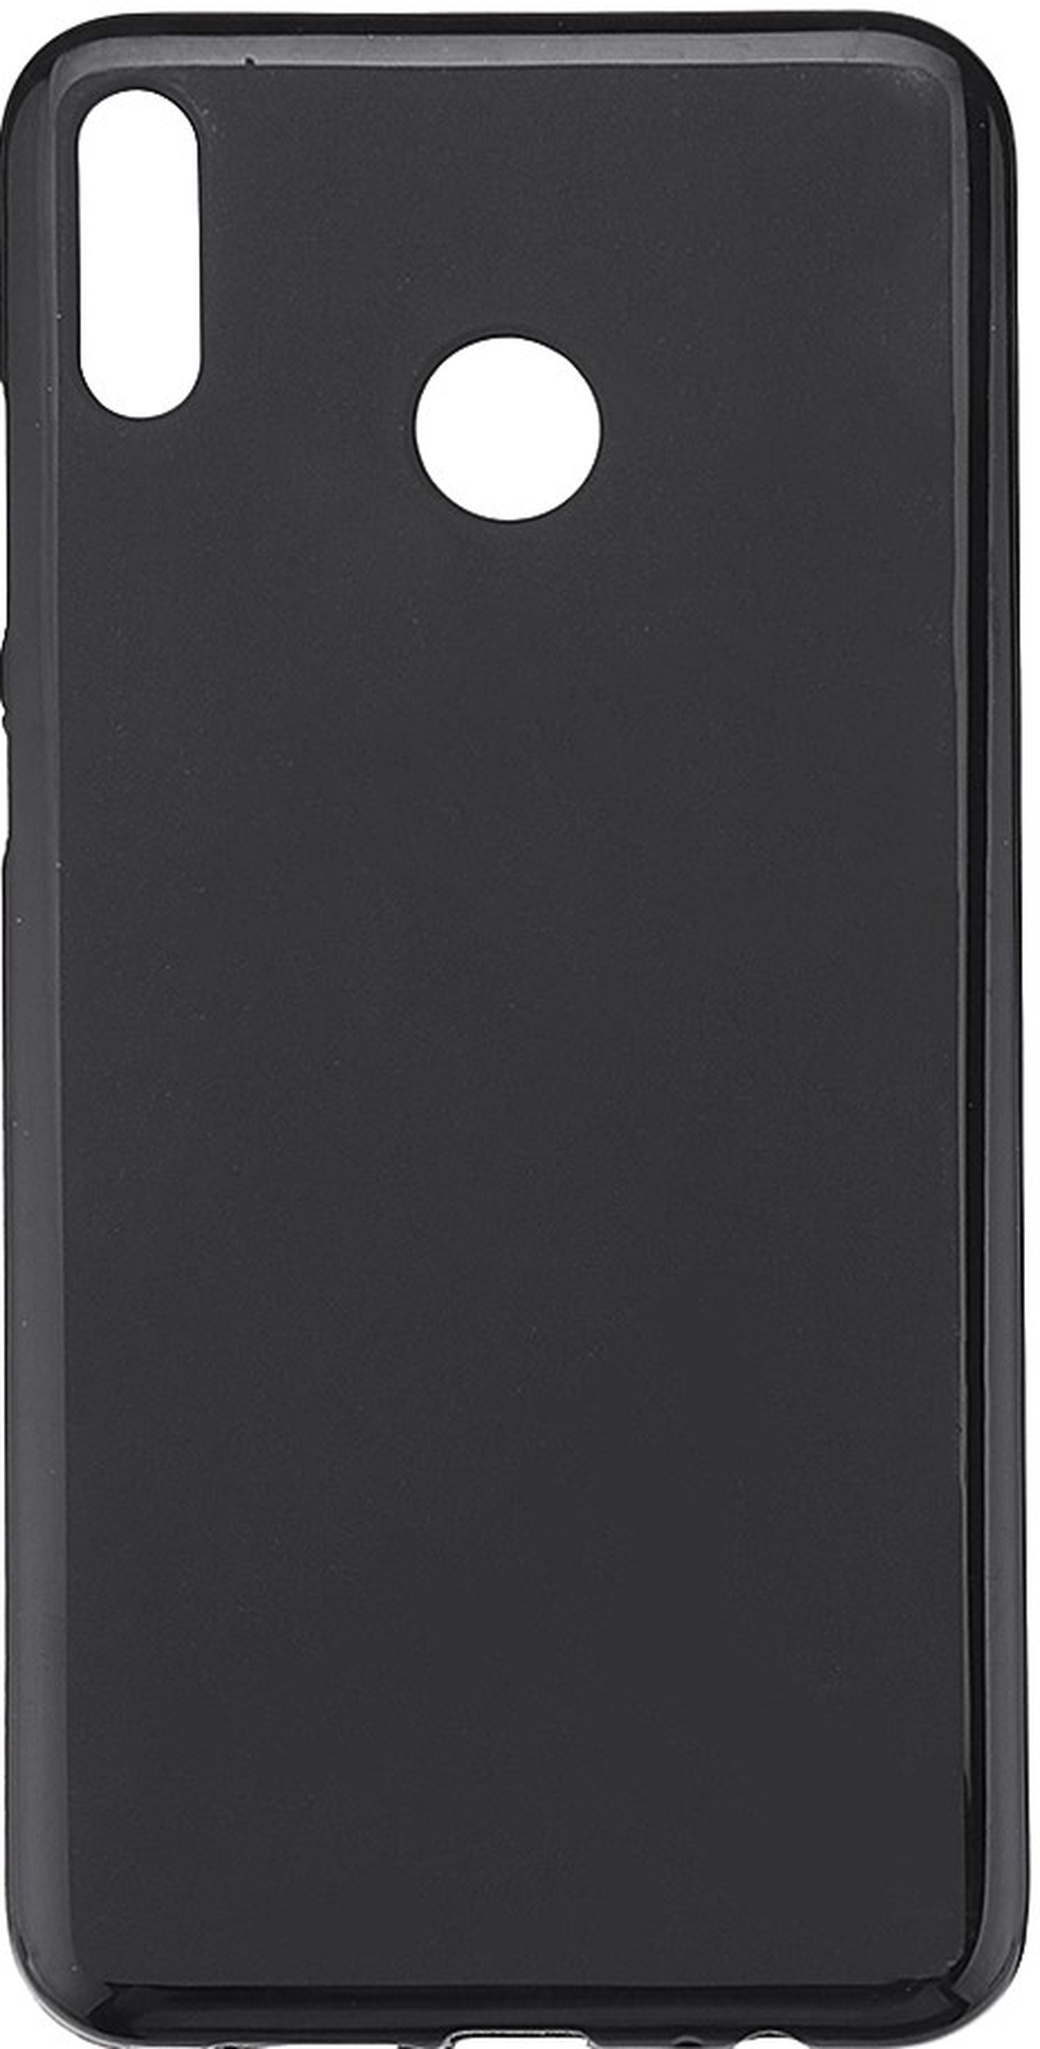 Чехол для смартфона Honor 8X Max силиконовый (матовый) черный, BoraSCO фото